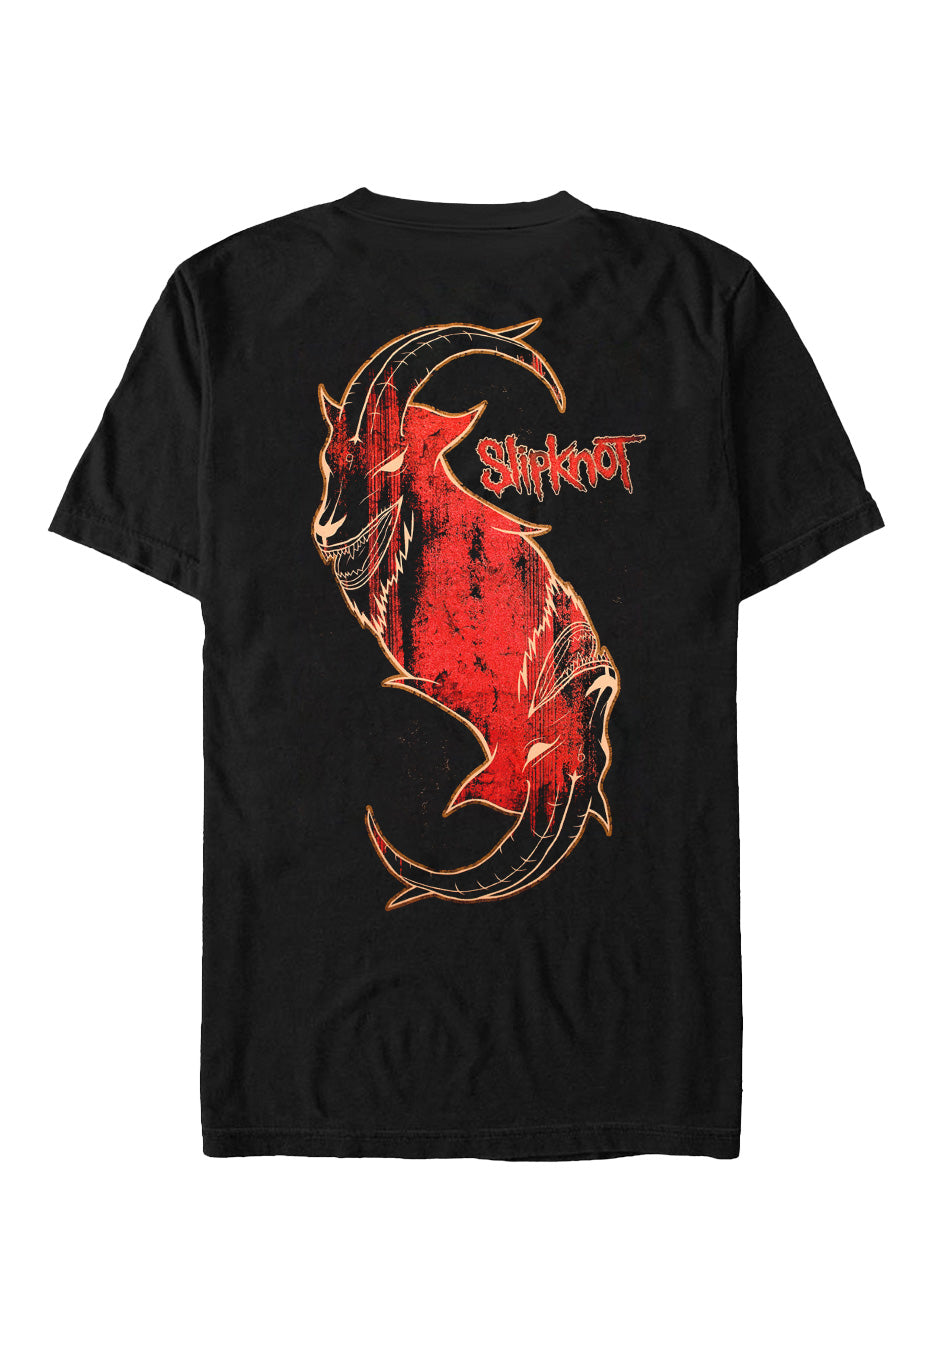 Slipknot - New Masks - T-Shirt